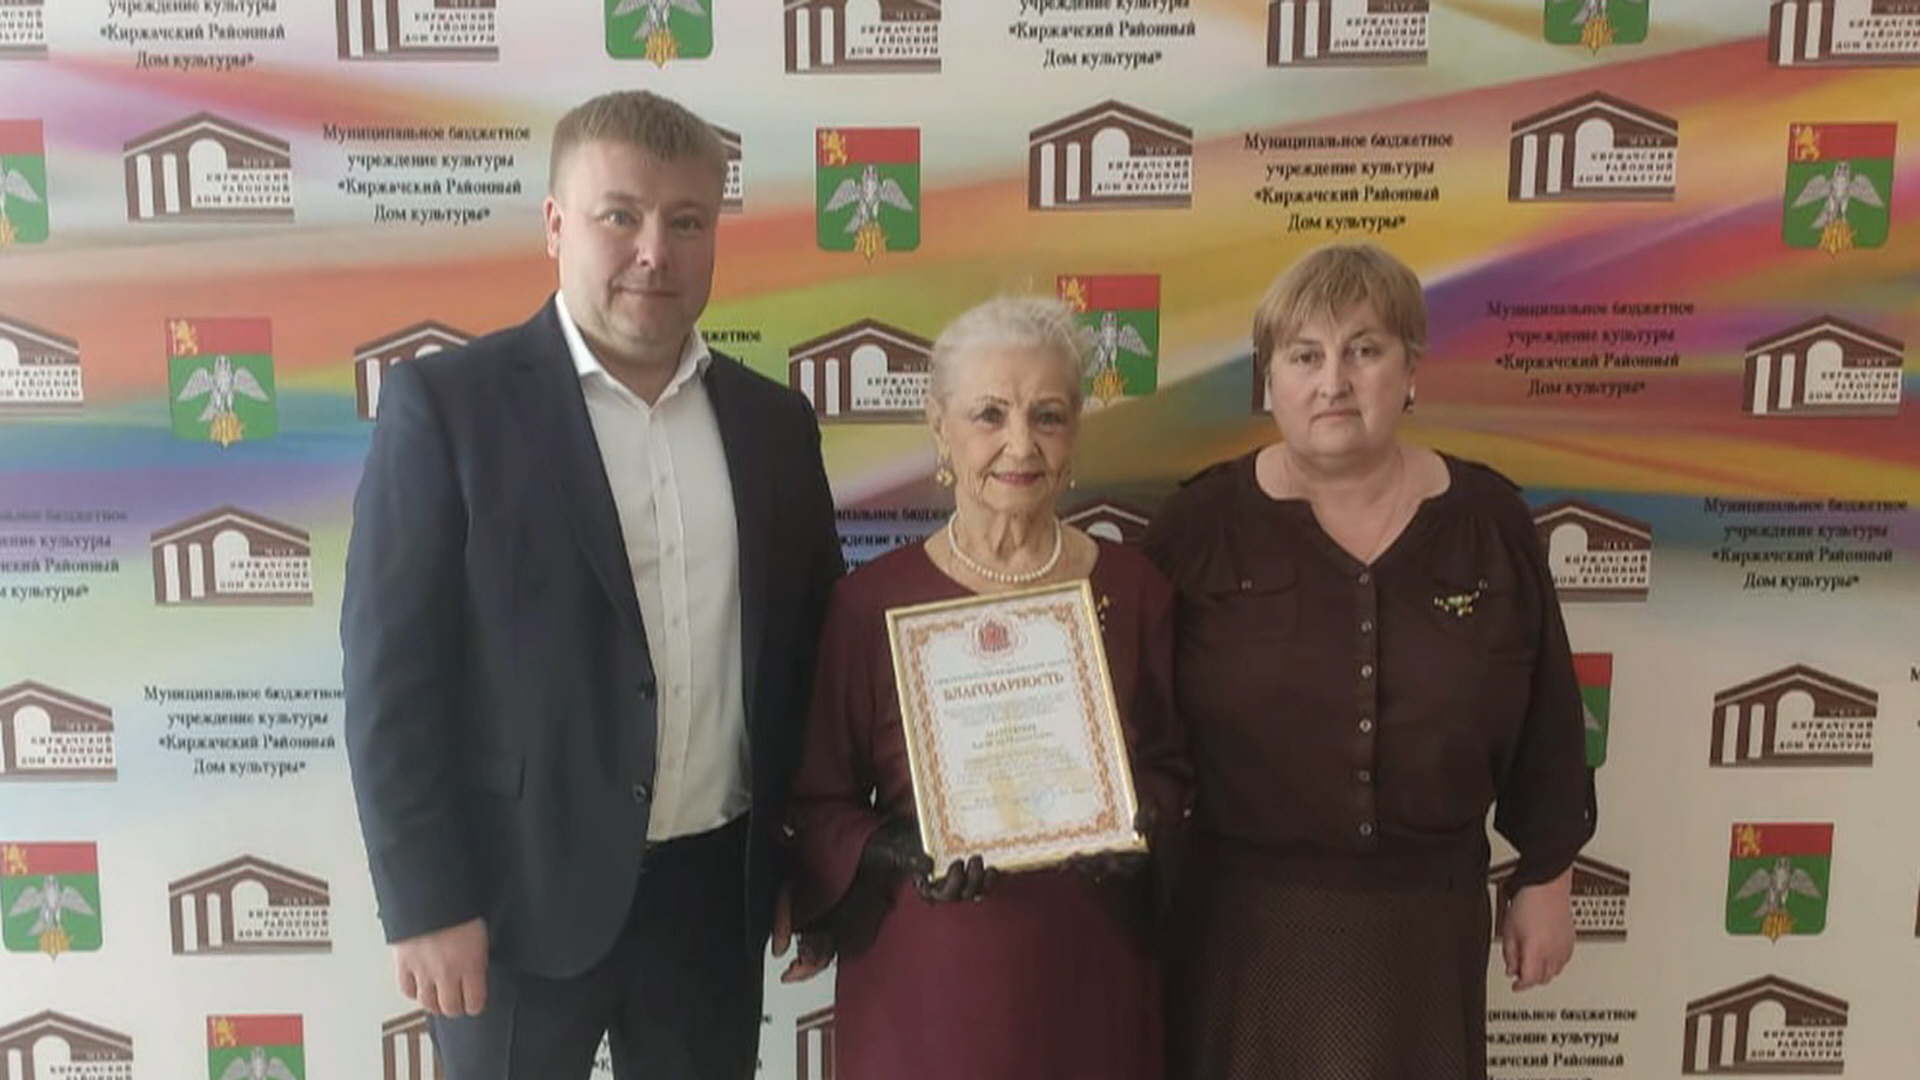 Евгении Минаевой присвоено звание «Почетного гражданина города Киржач и Киржачского района»